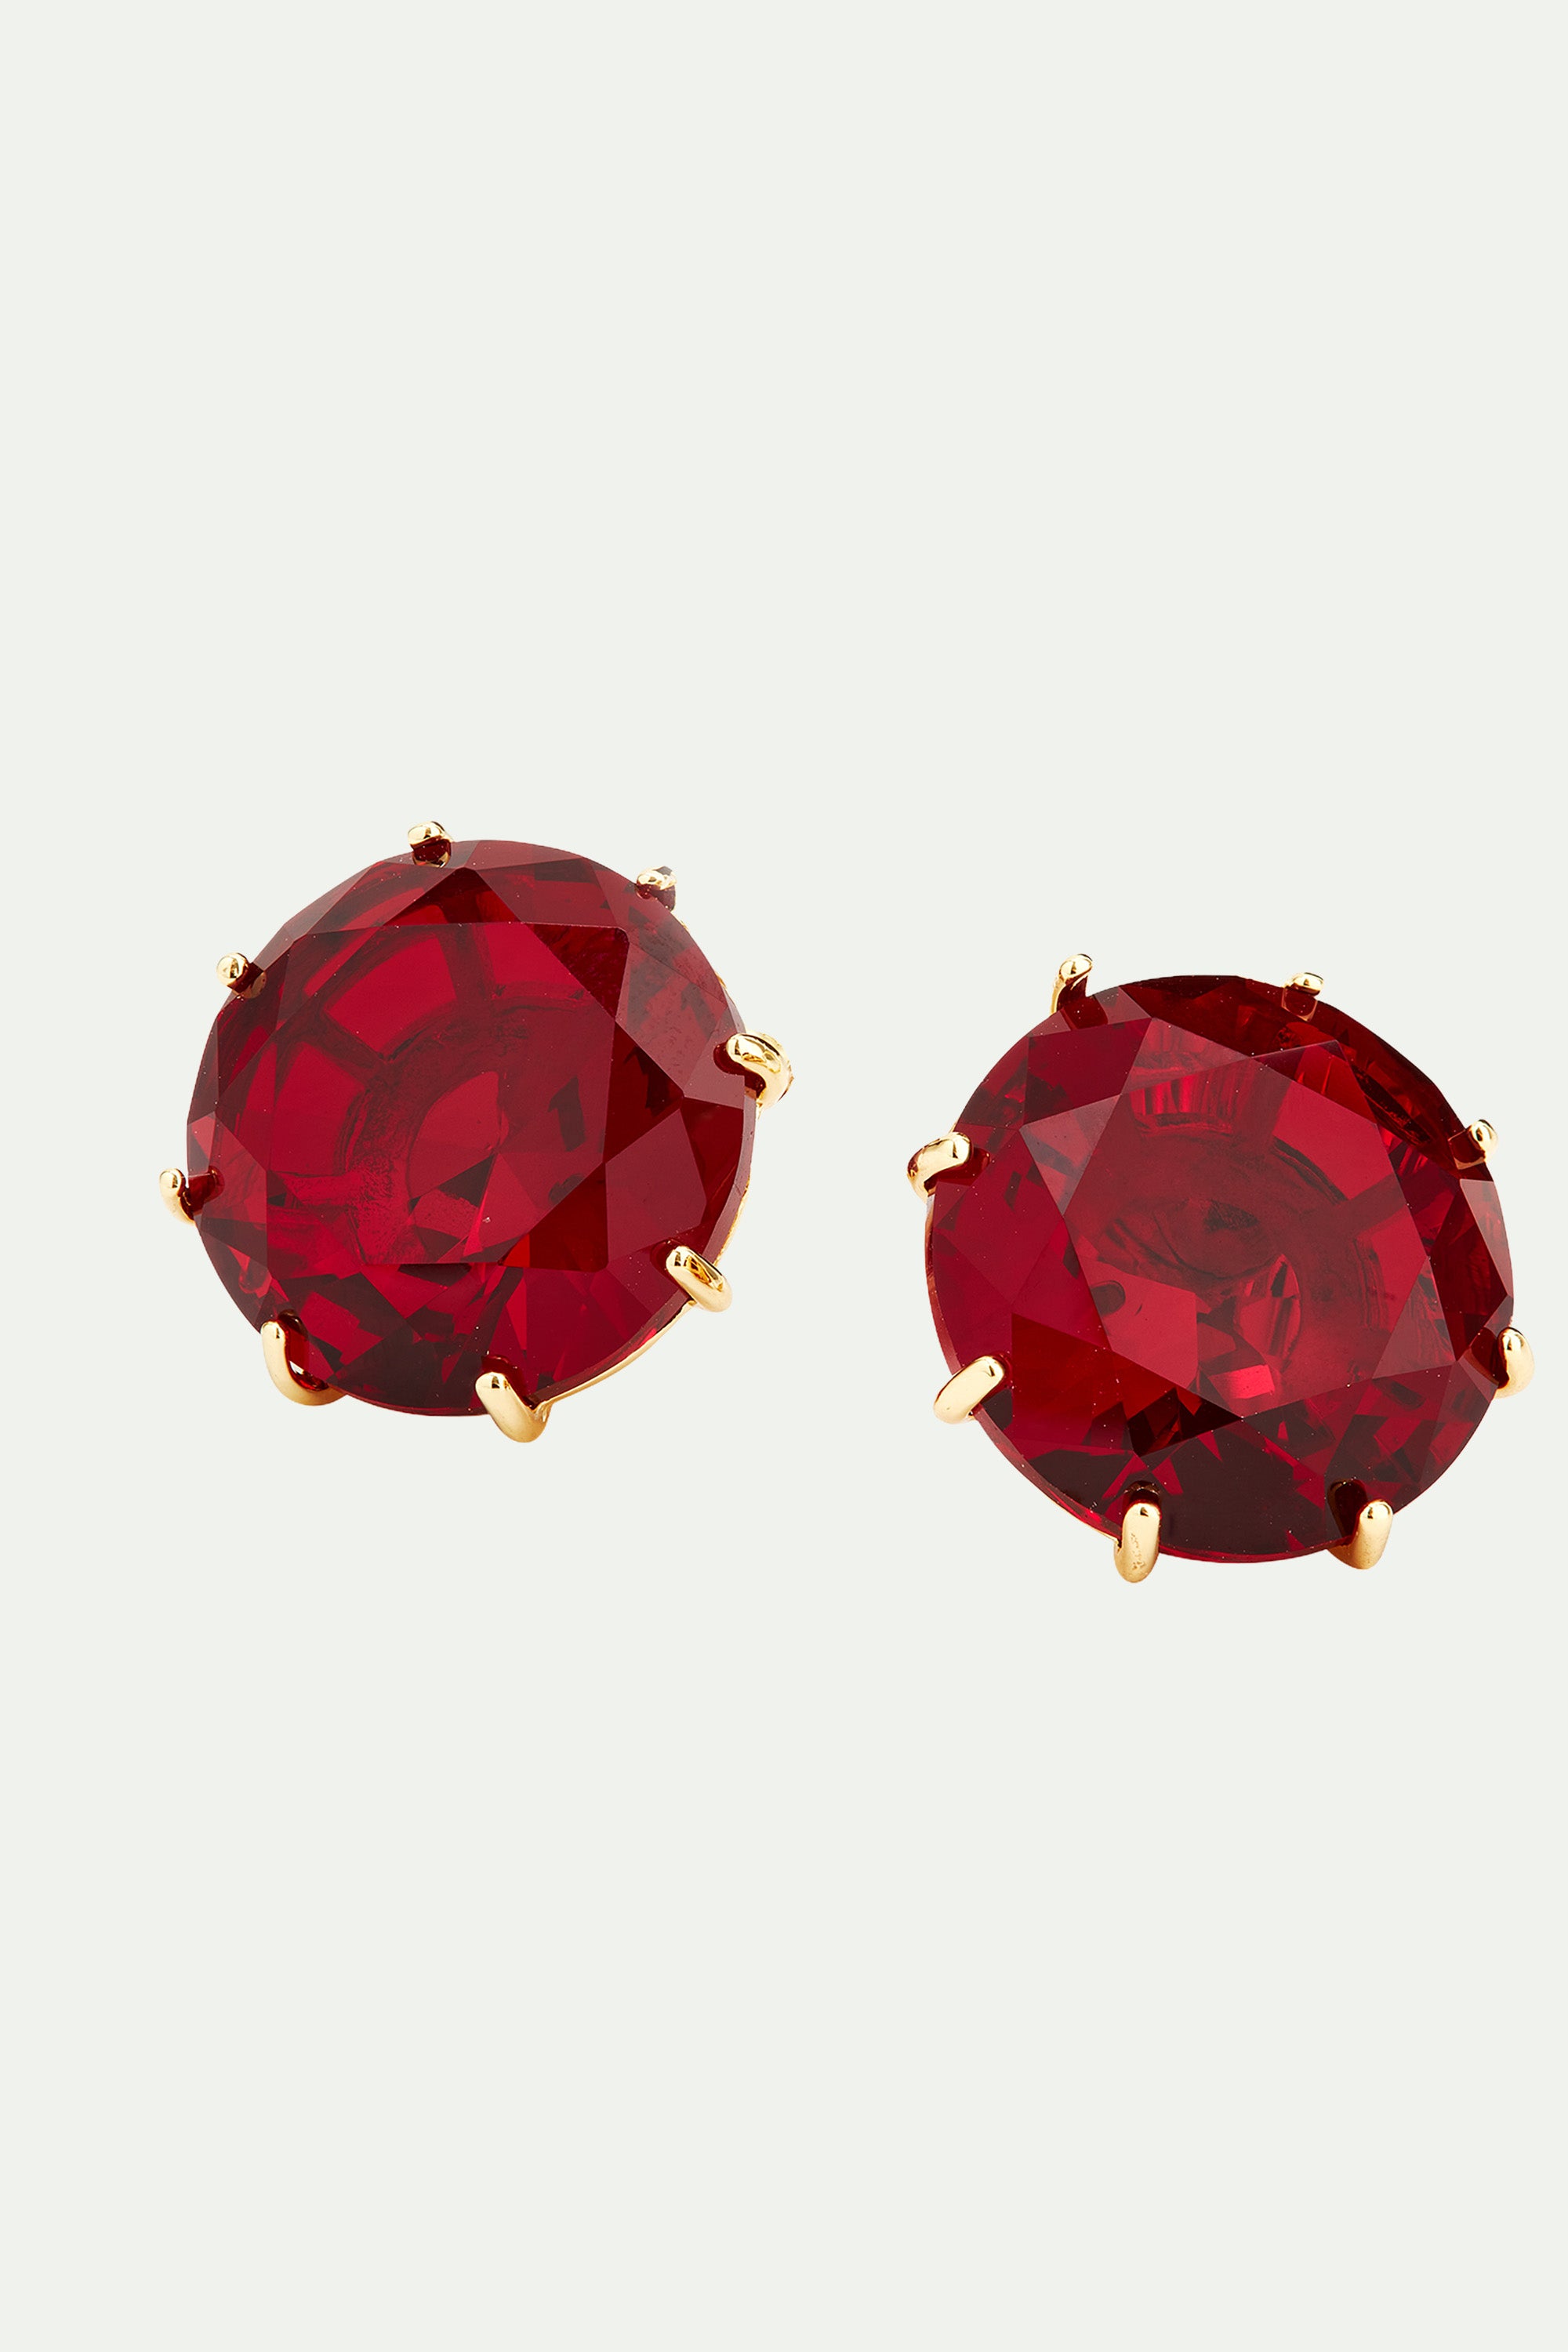 Pendientes bolitas piedra redonda La Diamantine rojo granate